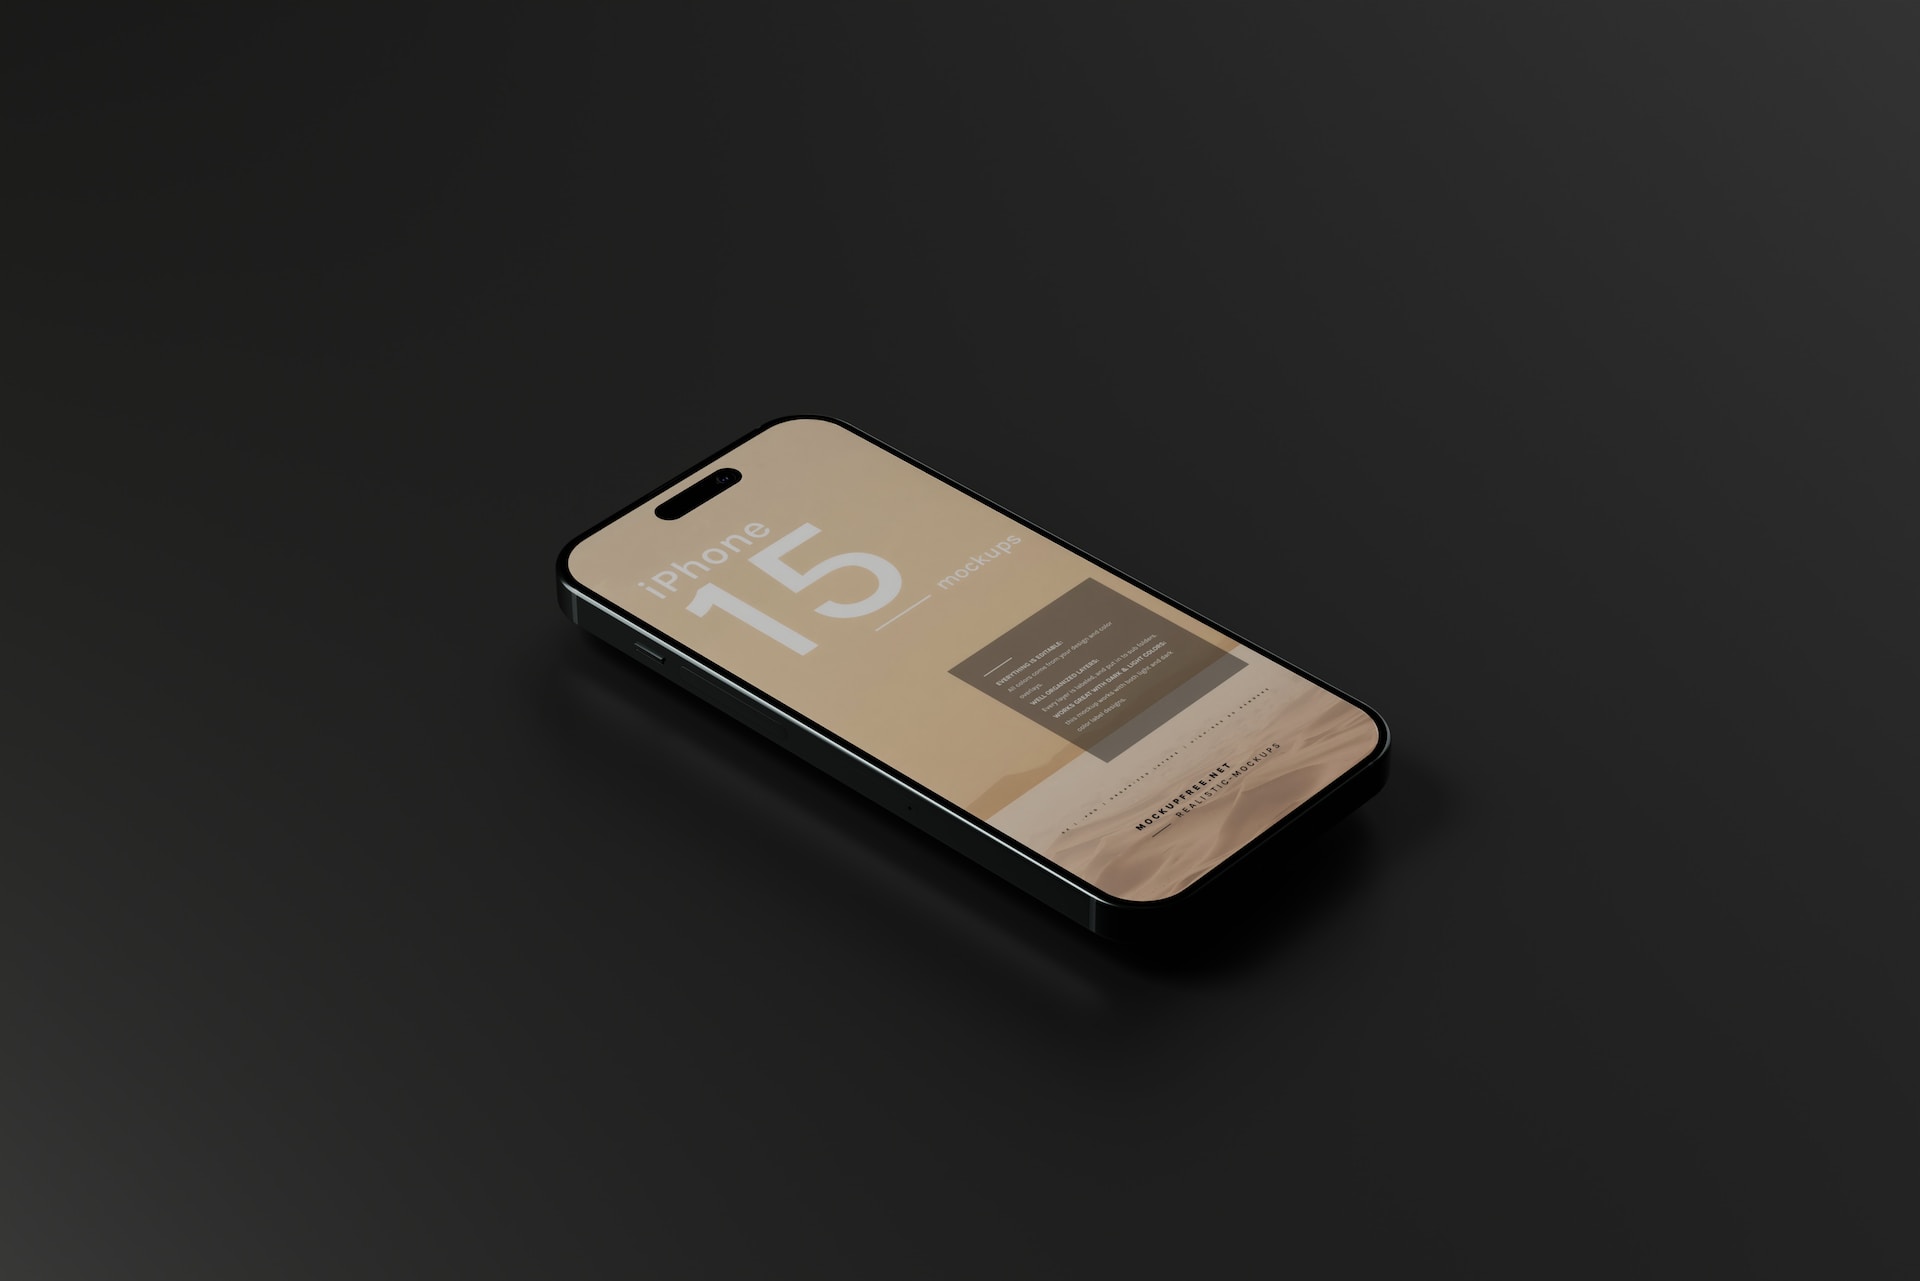 Batterie externe MagSafe pour iPhone : voici les derniers détails techniques